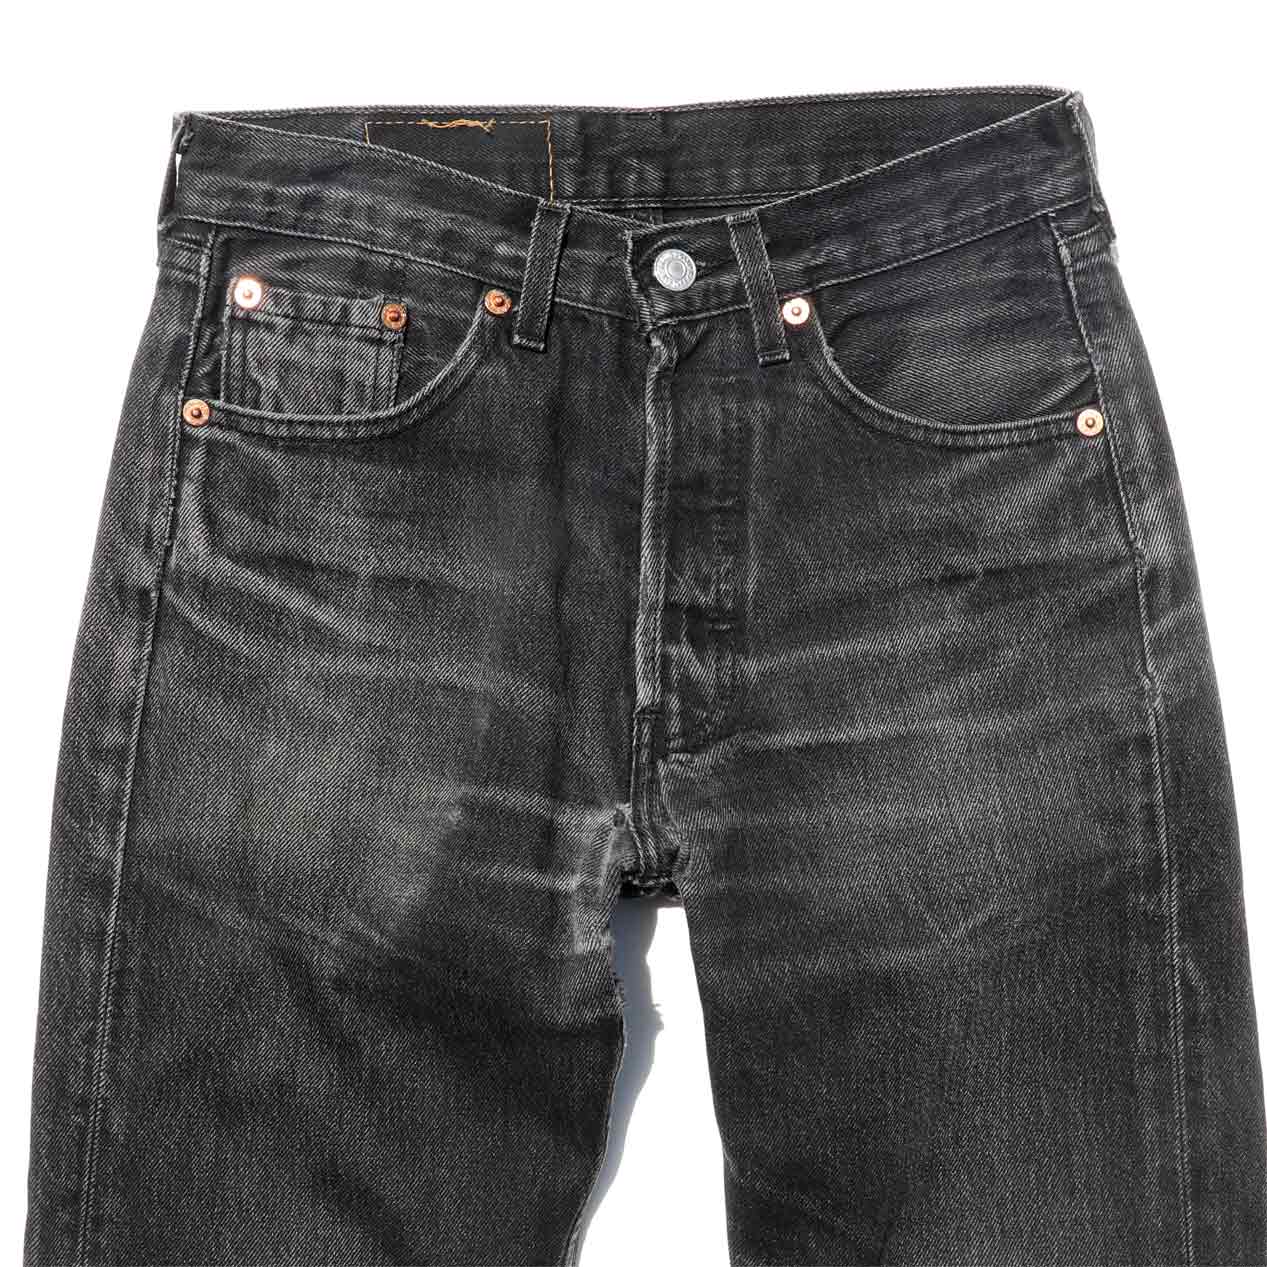 POST JUNK / 90âs LEVIâS 501 Faded Black Denim Pants Made In France [W27]